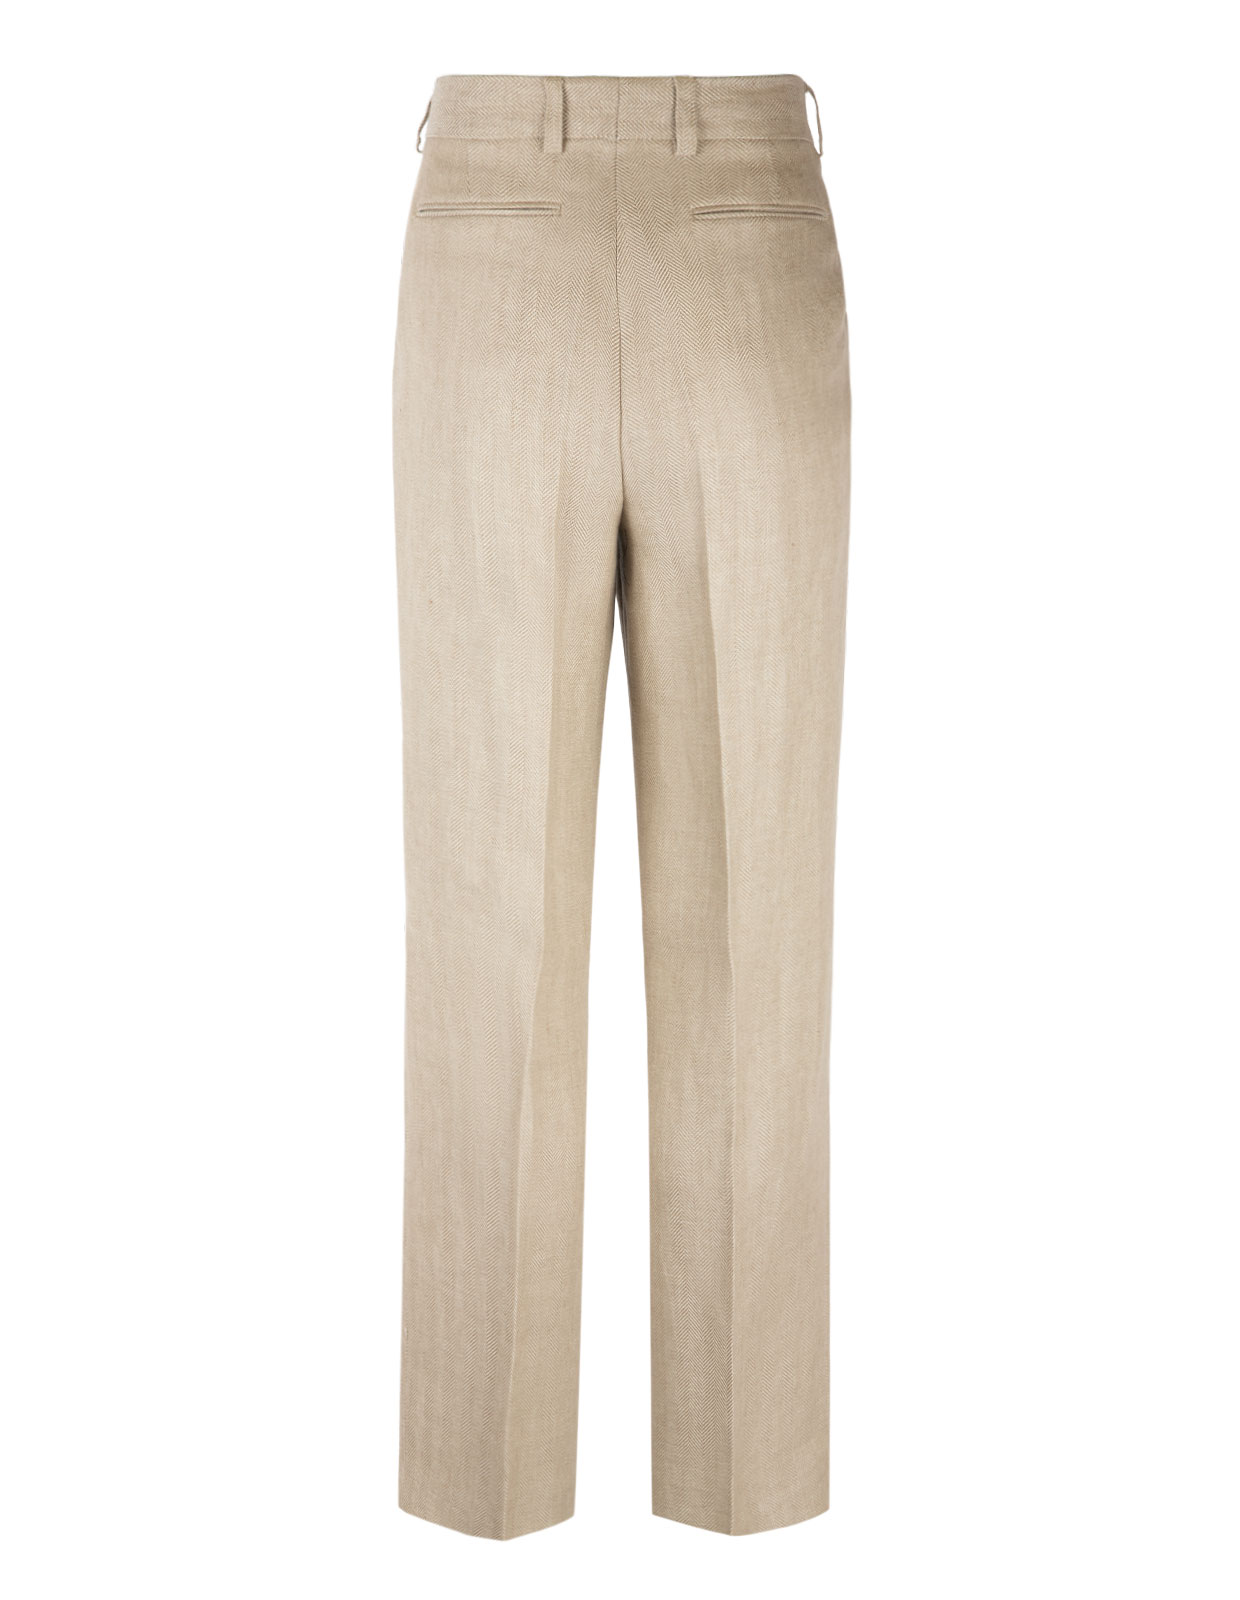 Trousers in Fishbone Linnen Beige/Cream